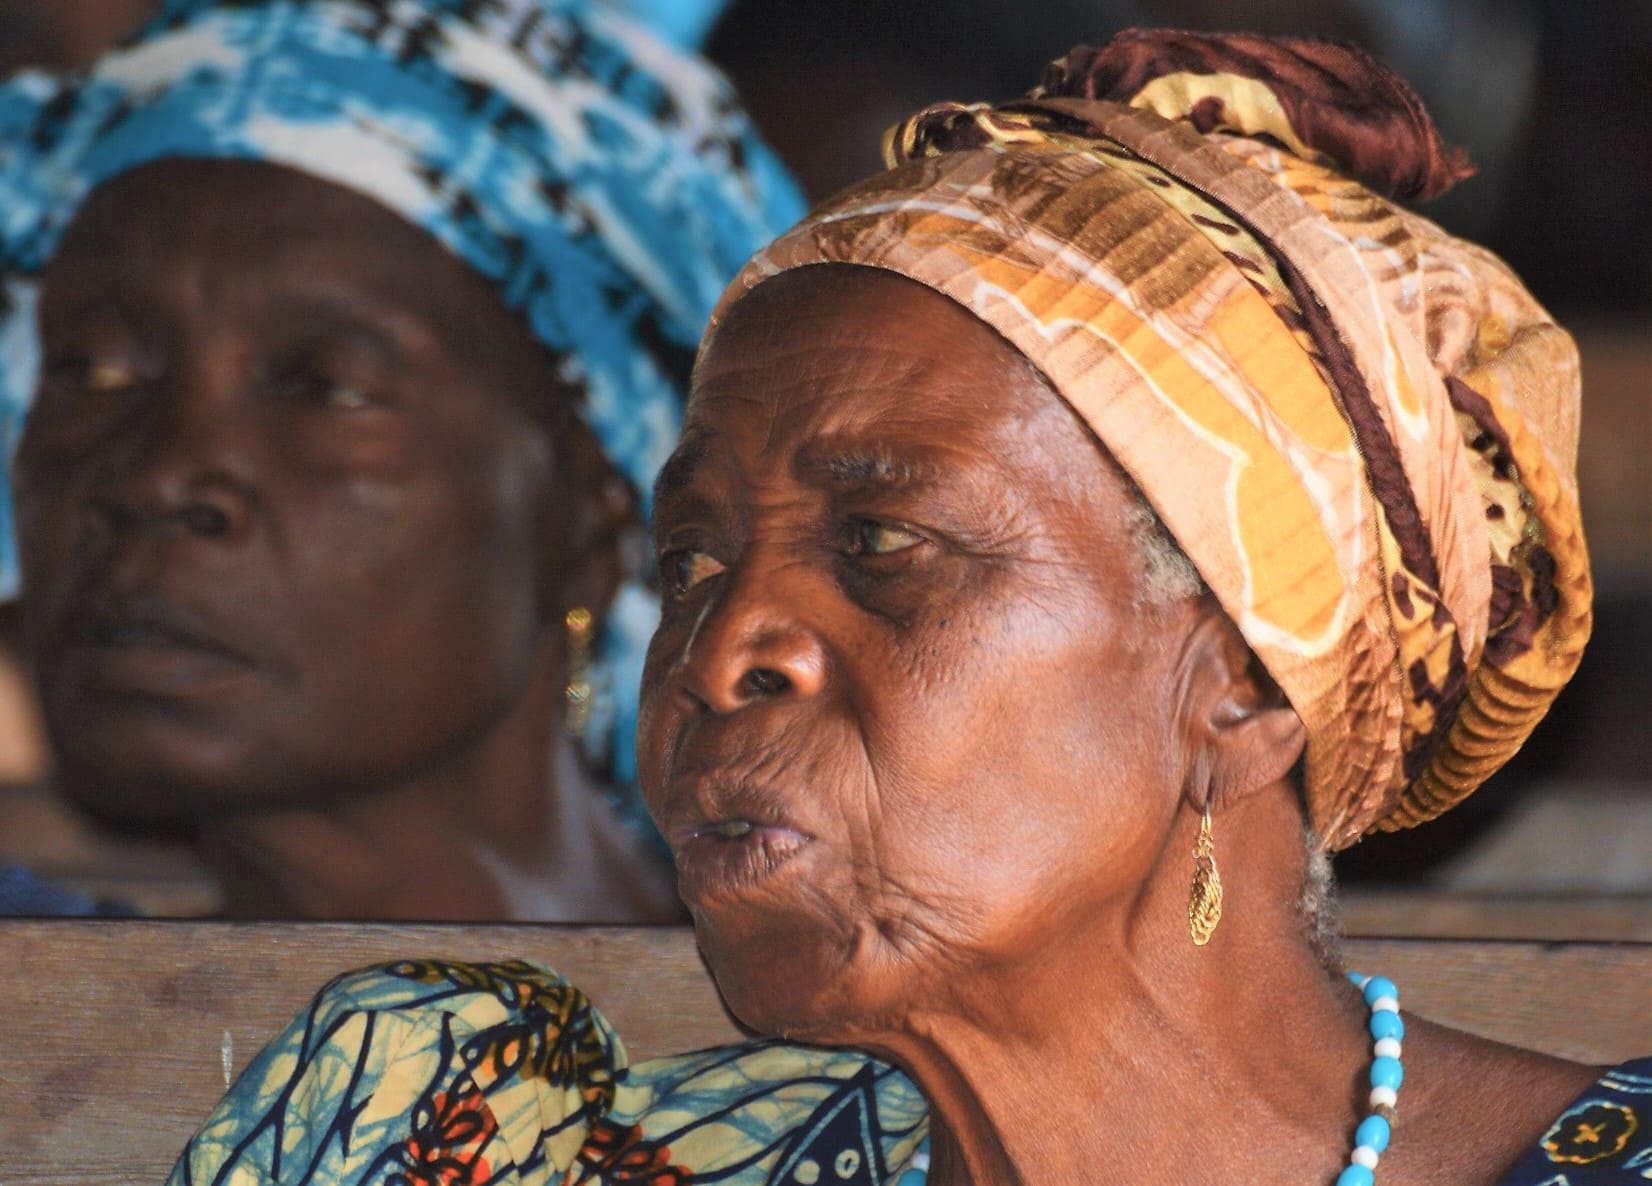 Fotografie dal Togo: emozioni tratte da un’indimenticabile esperienza di vita